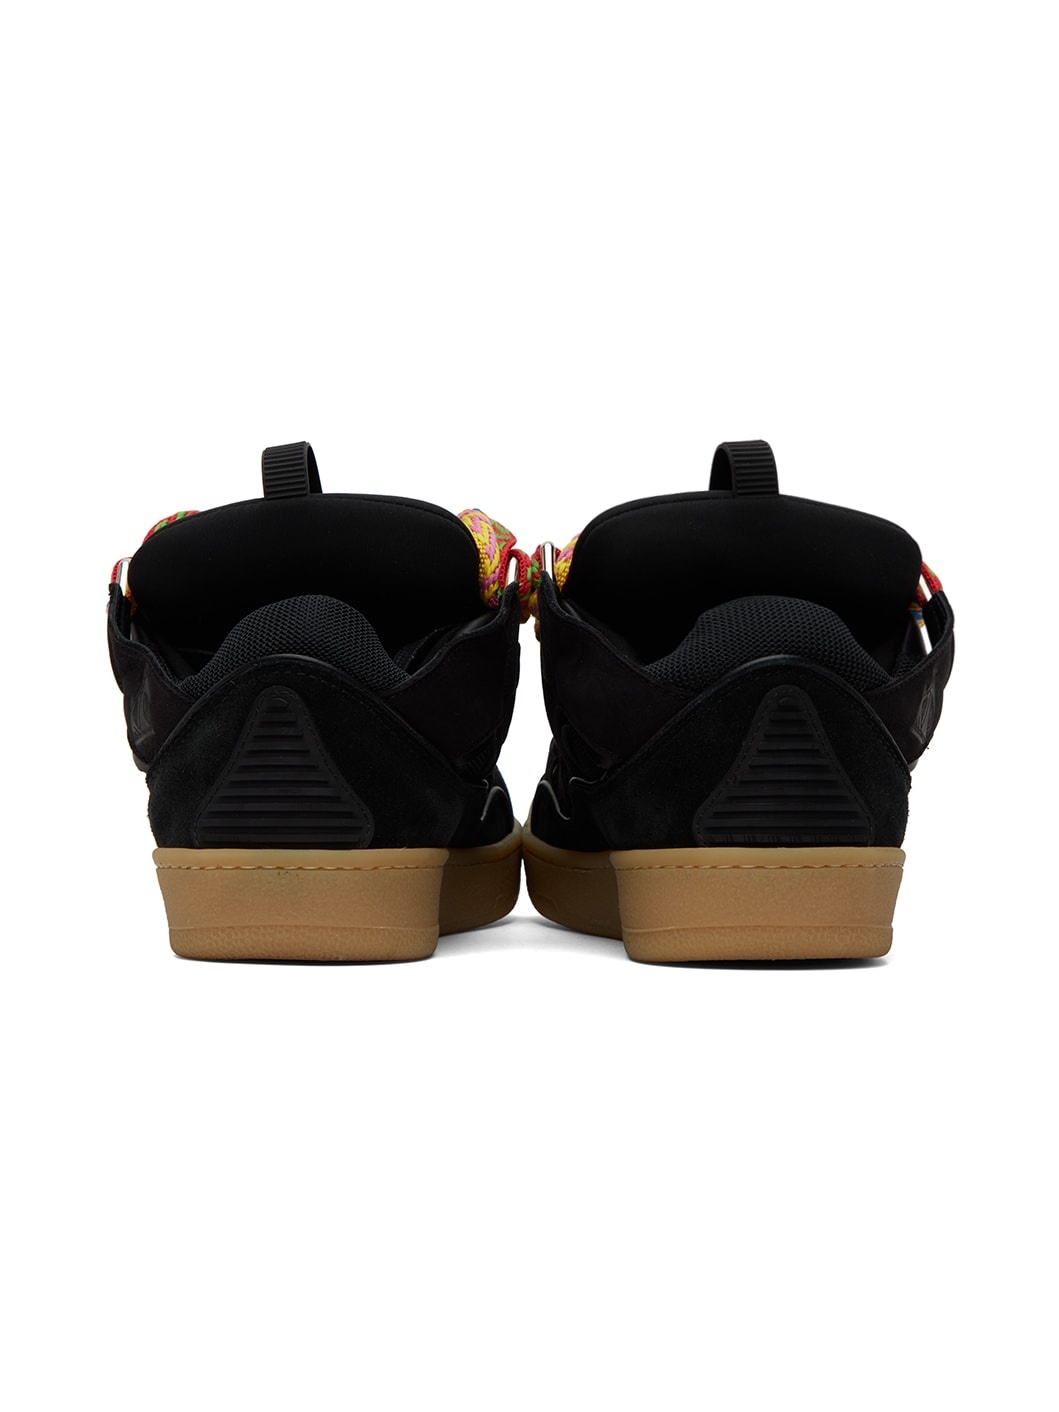 Black Curb Sneakers - 2